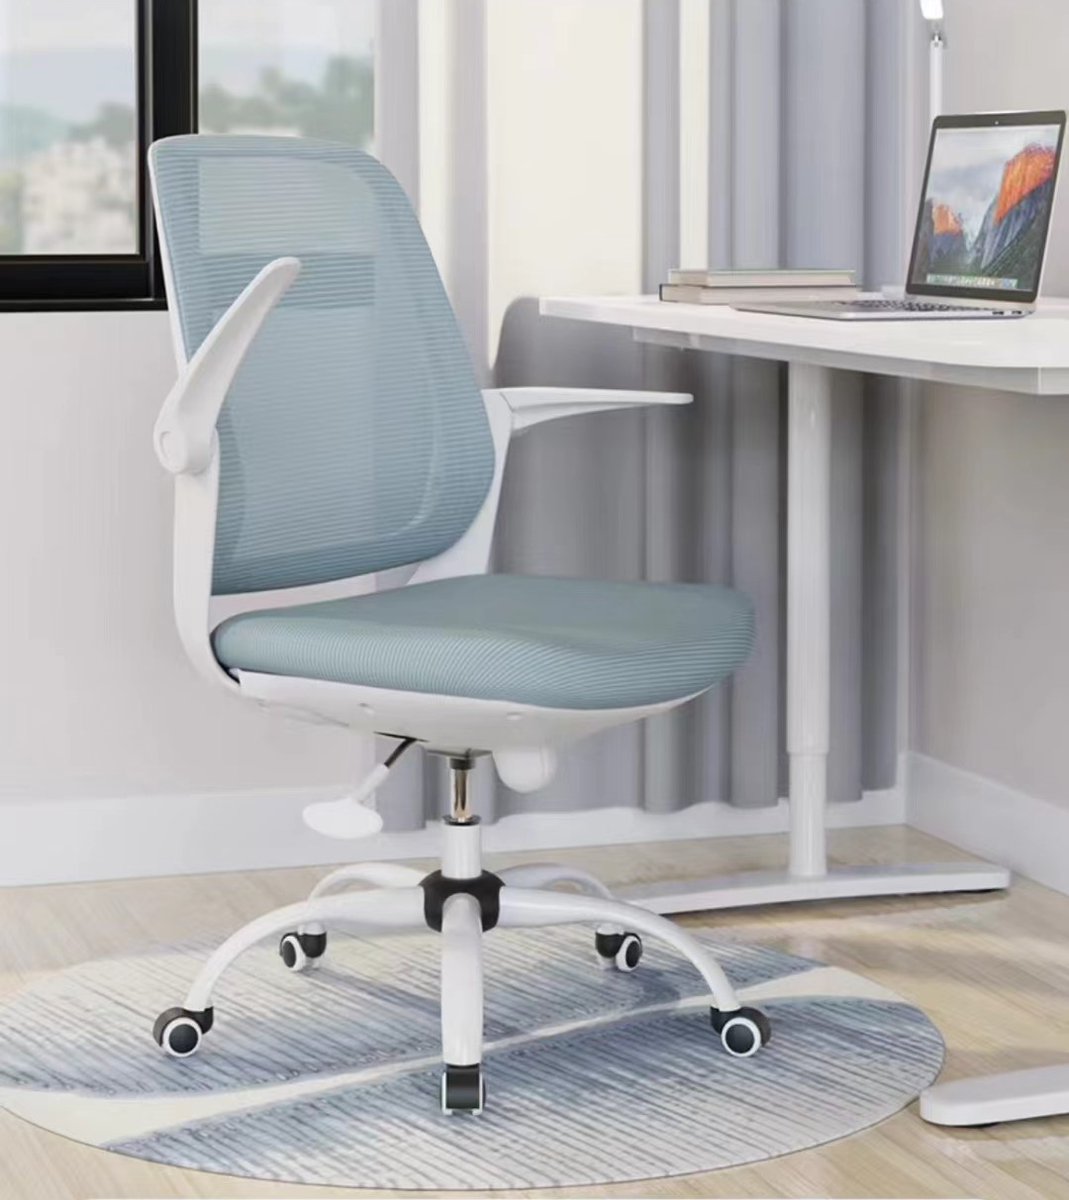 CHAIR WALTZ #moderndesign #OfficeSpace #workspace #furnituredesign #officefurniture #manufacturers #chair #officechairs #interiordesign #WorkFromHome #homeoffice #homefurniture #officedesign